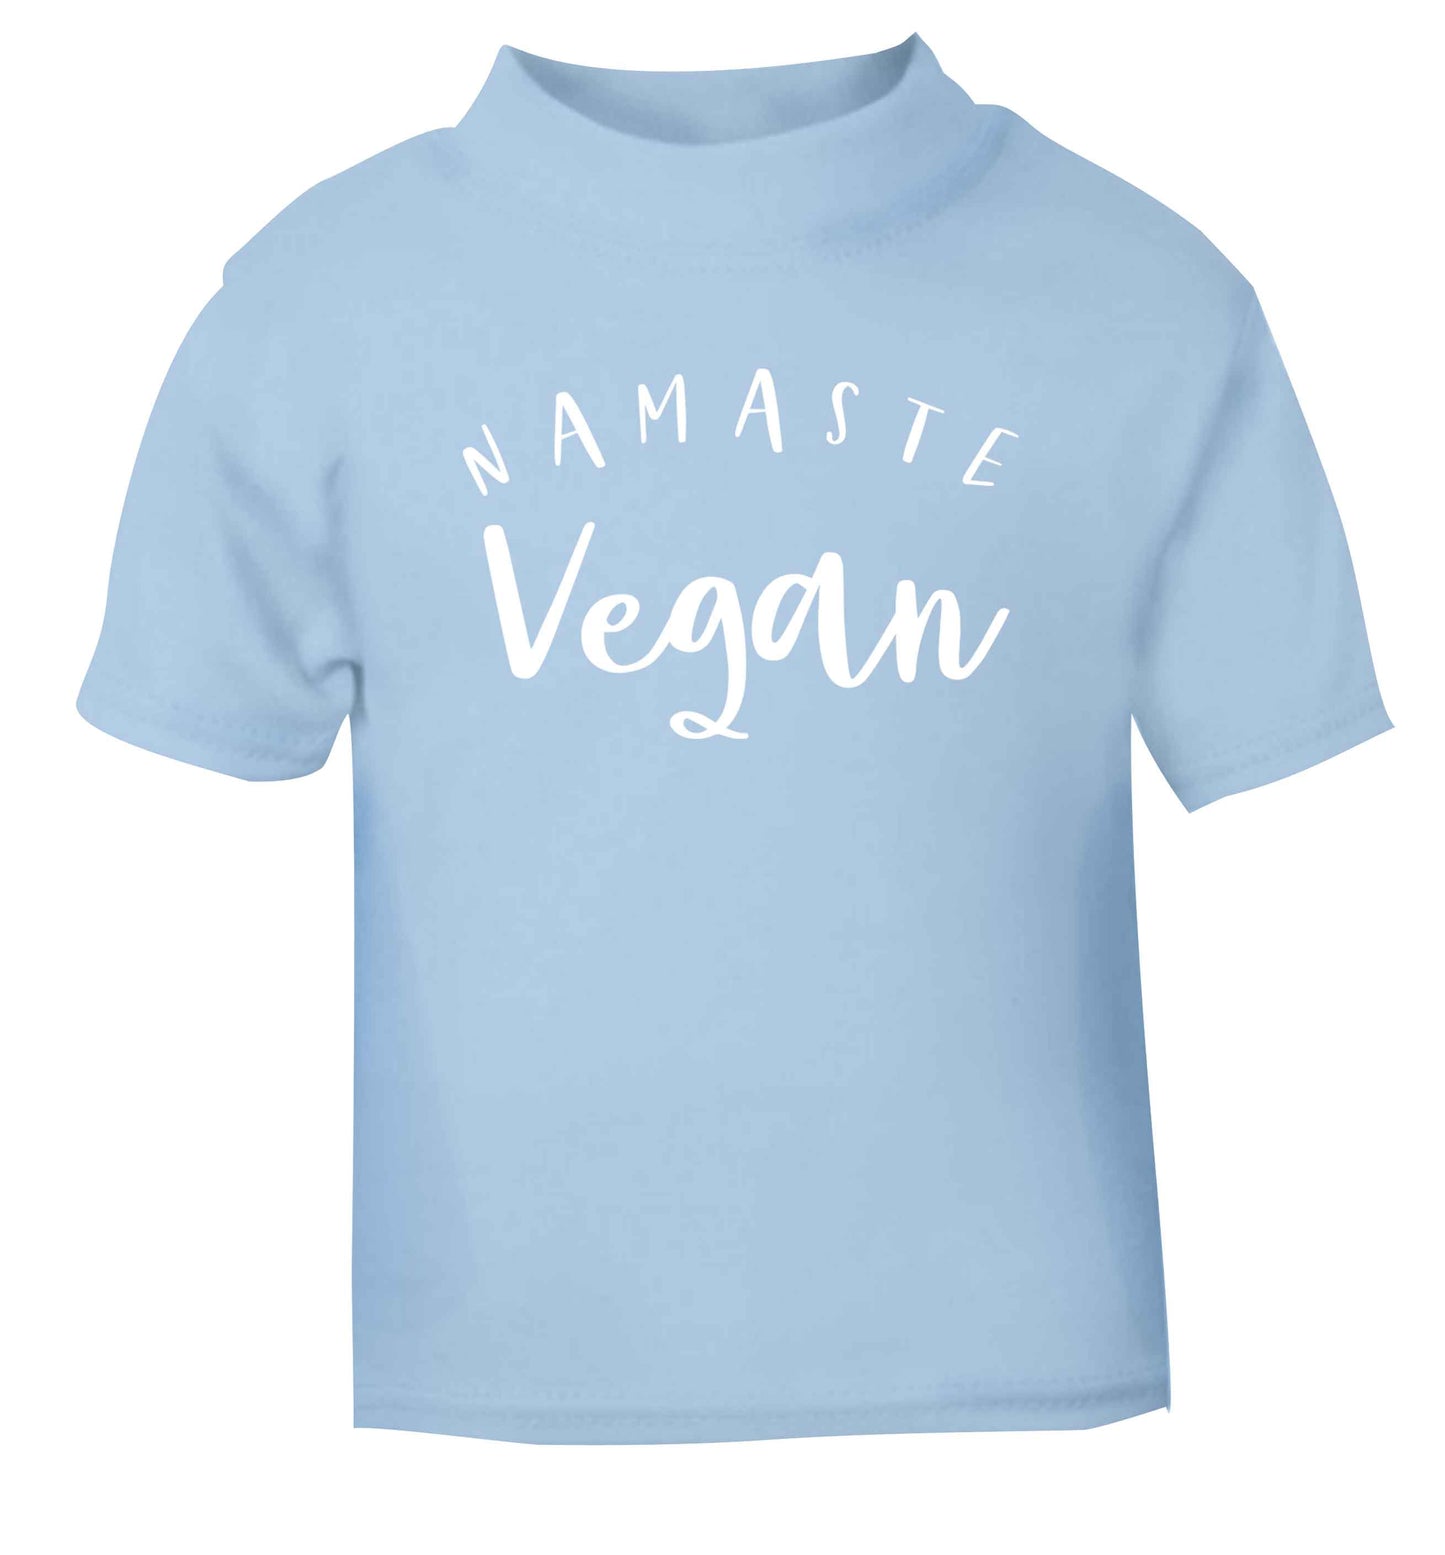 Namaste vegan light blue Baby Toddler Tshirt 2 Years